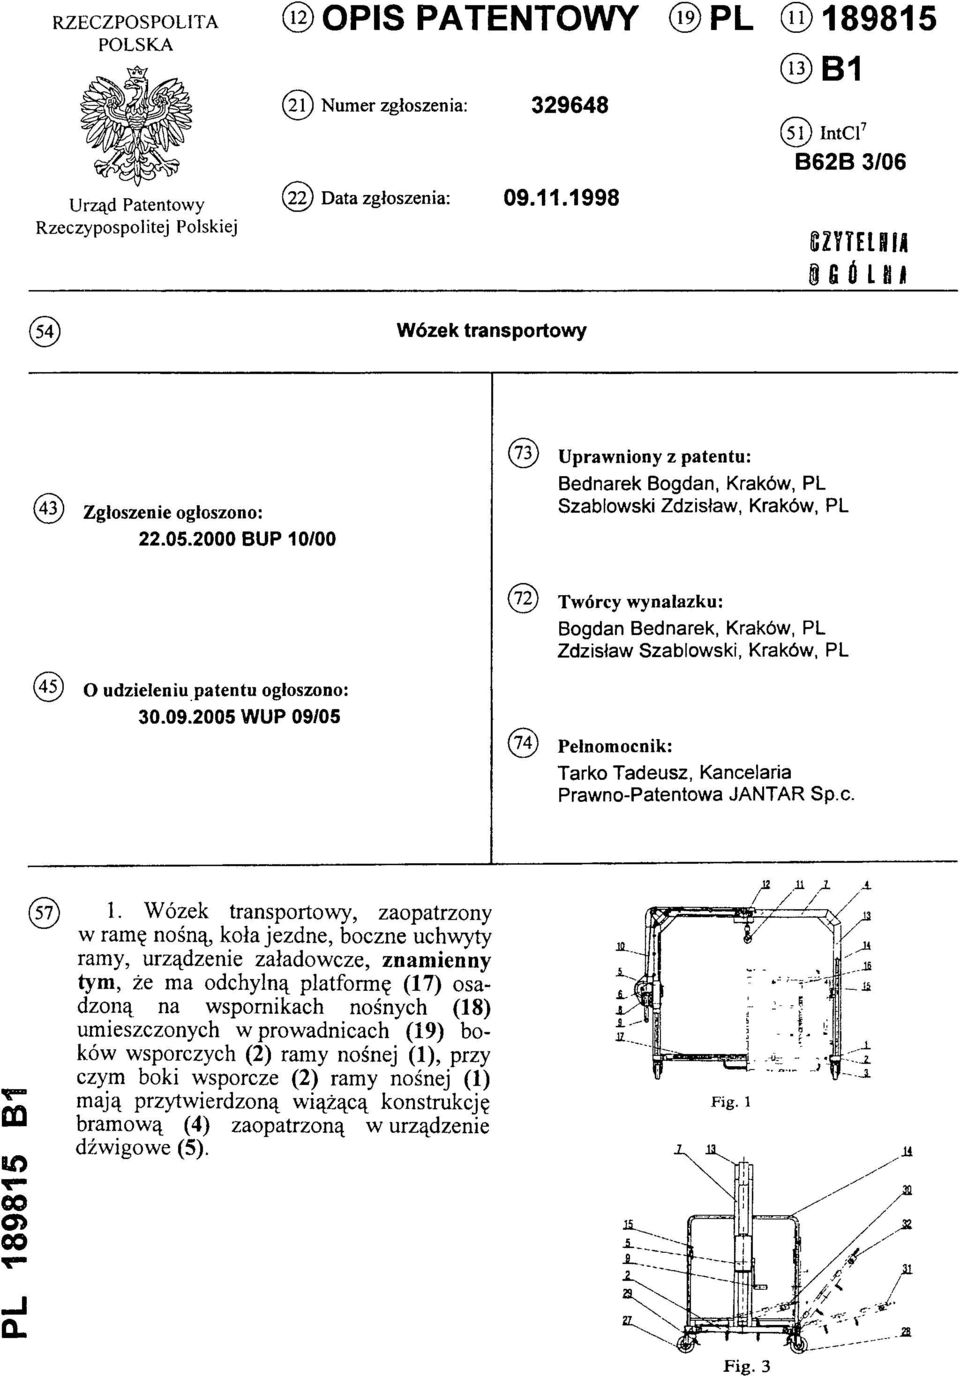 udzieleniu patentu ogłoszono: 30.09.2005 WUP 09/05 (74) Pełnomocnik: Tarko Tadeusz, Kancelaria Prawno-Patentowa JANTAR Sp.c. PL 189815 B1 (57) 1.